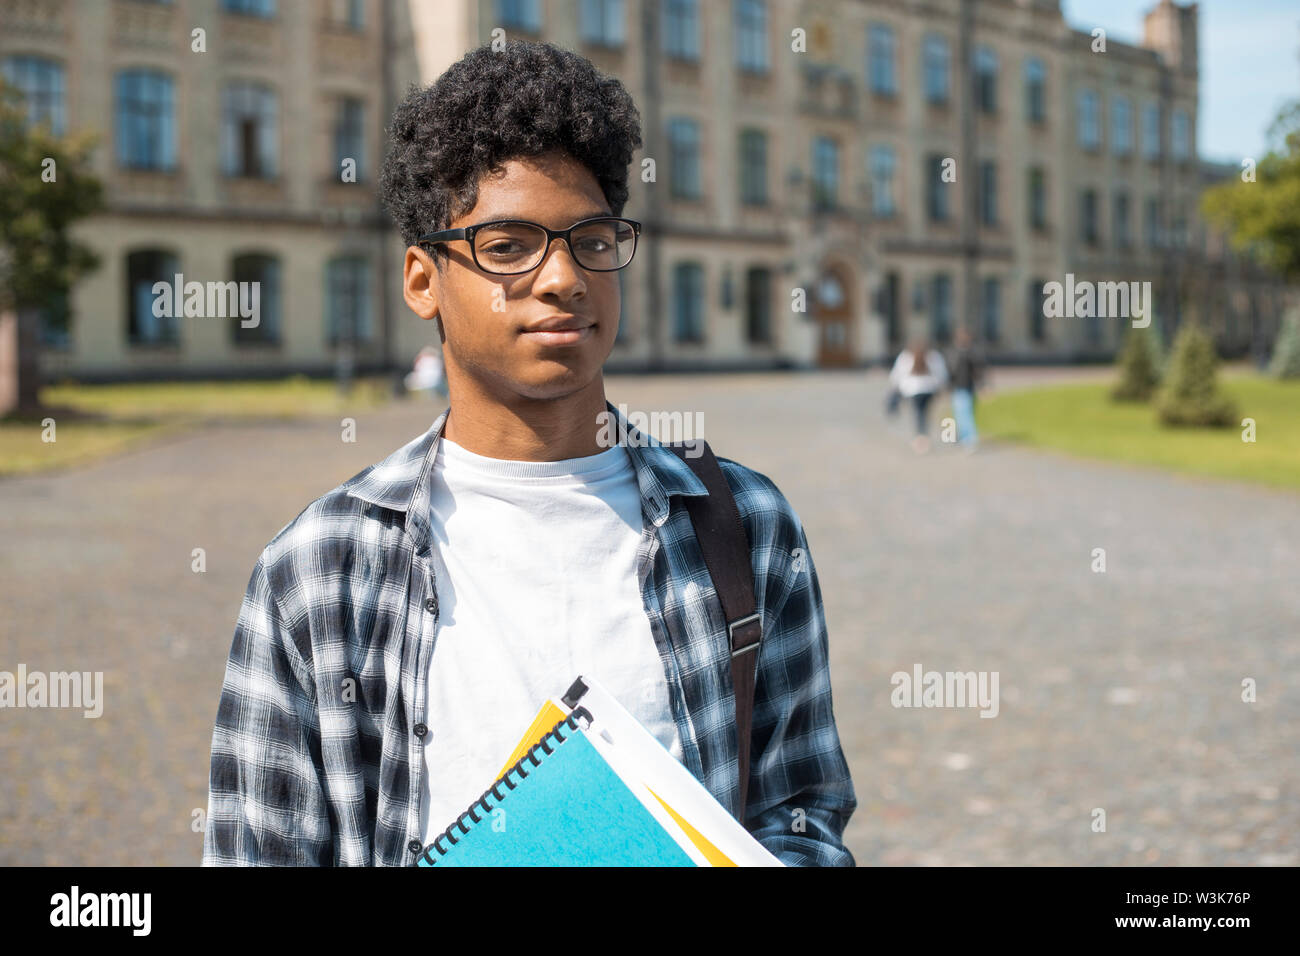 Un étudiant africain souriant avec des lunettes et des livres près de l'université. Portrait d'un jeune homme noir heureux debout sur un fond universitaire. Banque D'Images